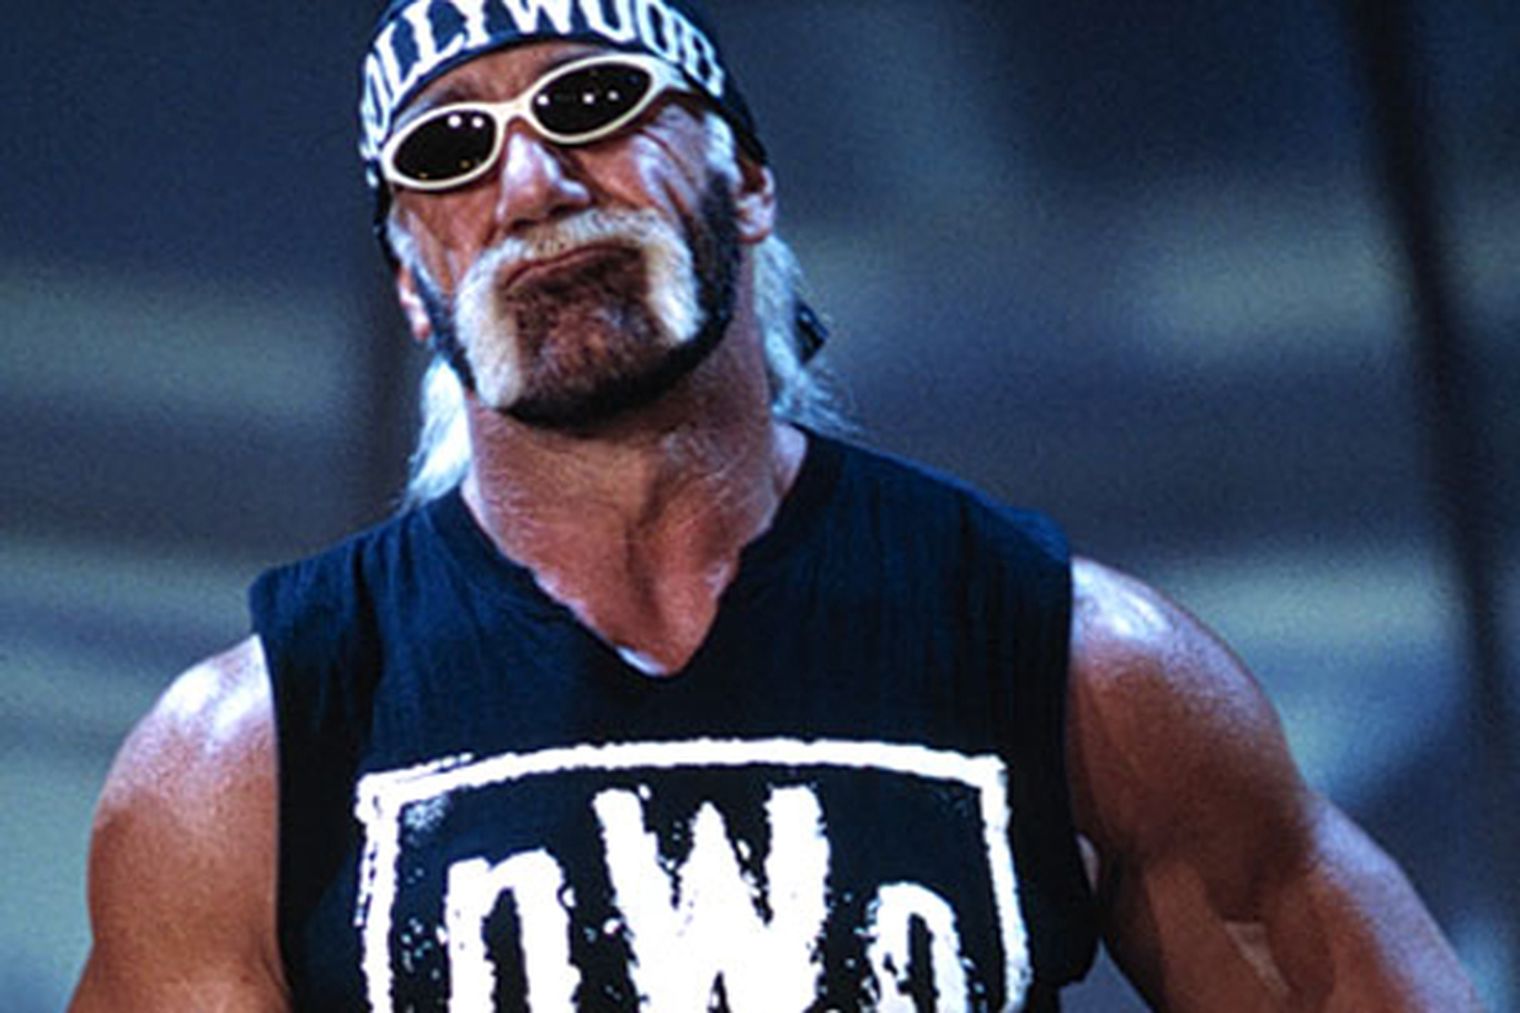 TNA: Hulk Hogan hints at bringing back his 'Hollywood' gimmick to 'save